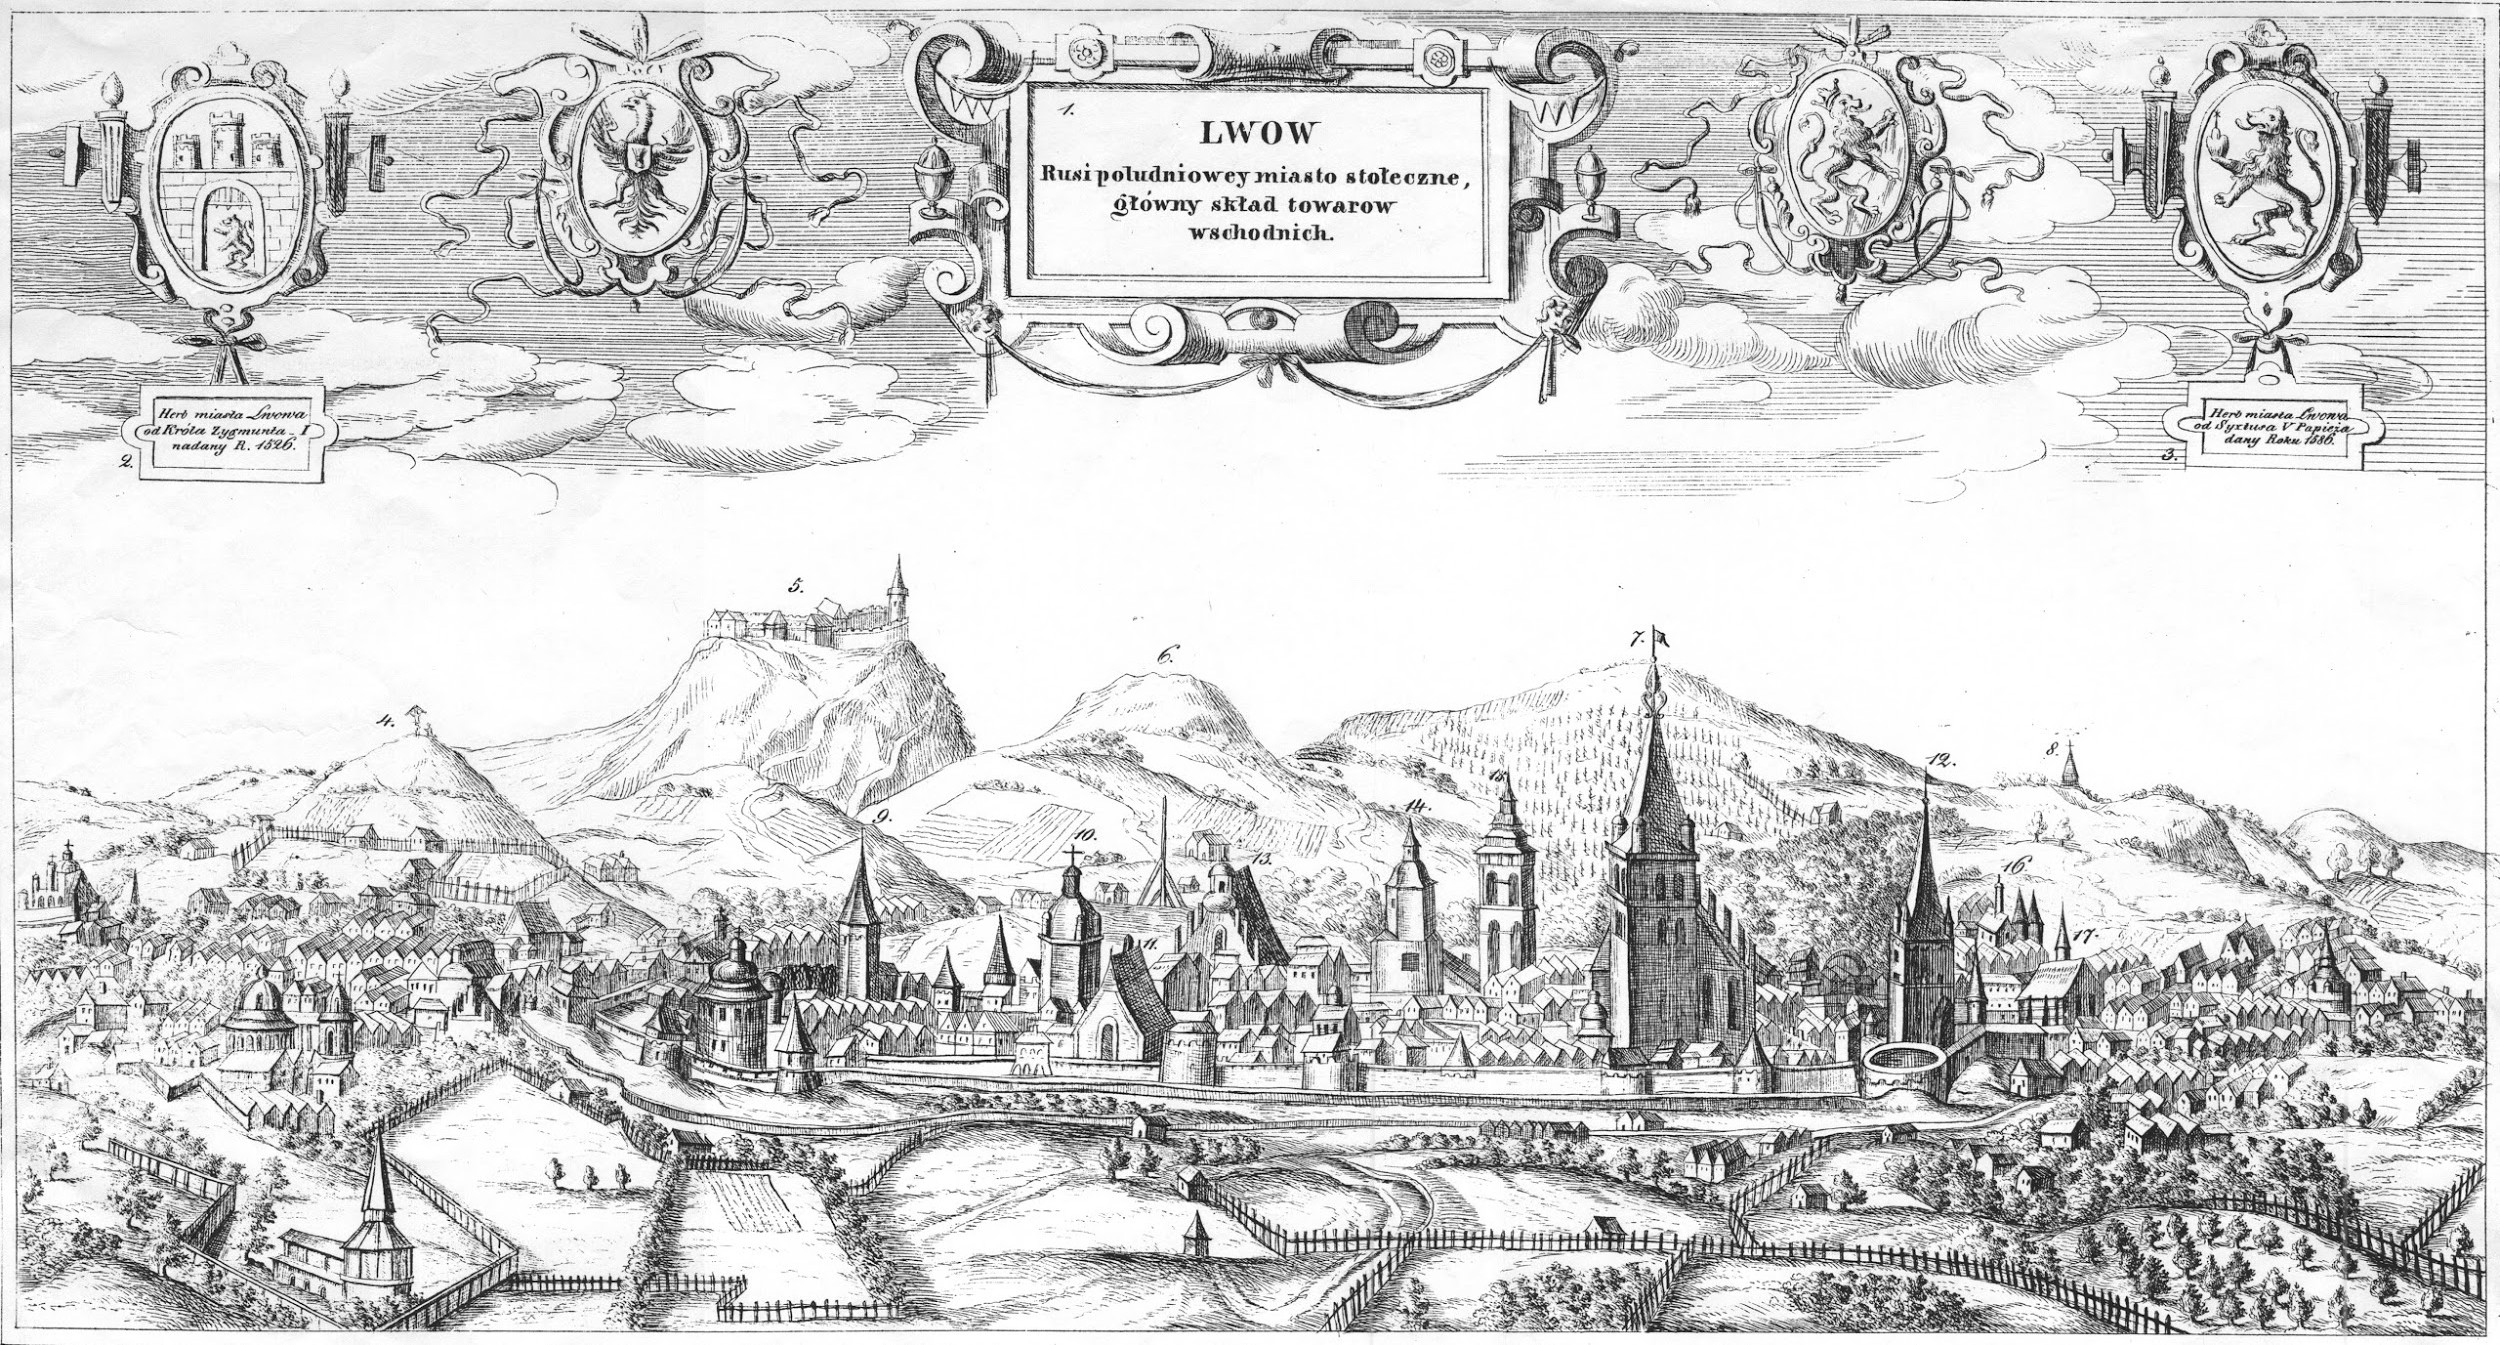 Історія заснування міста Львова